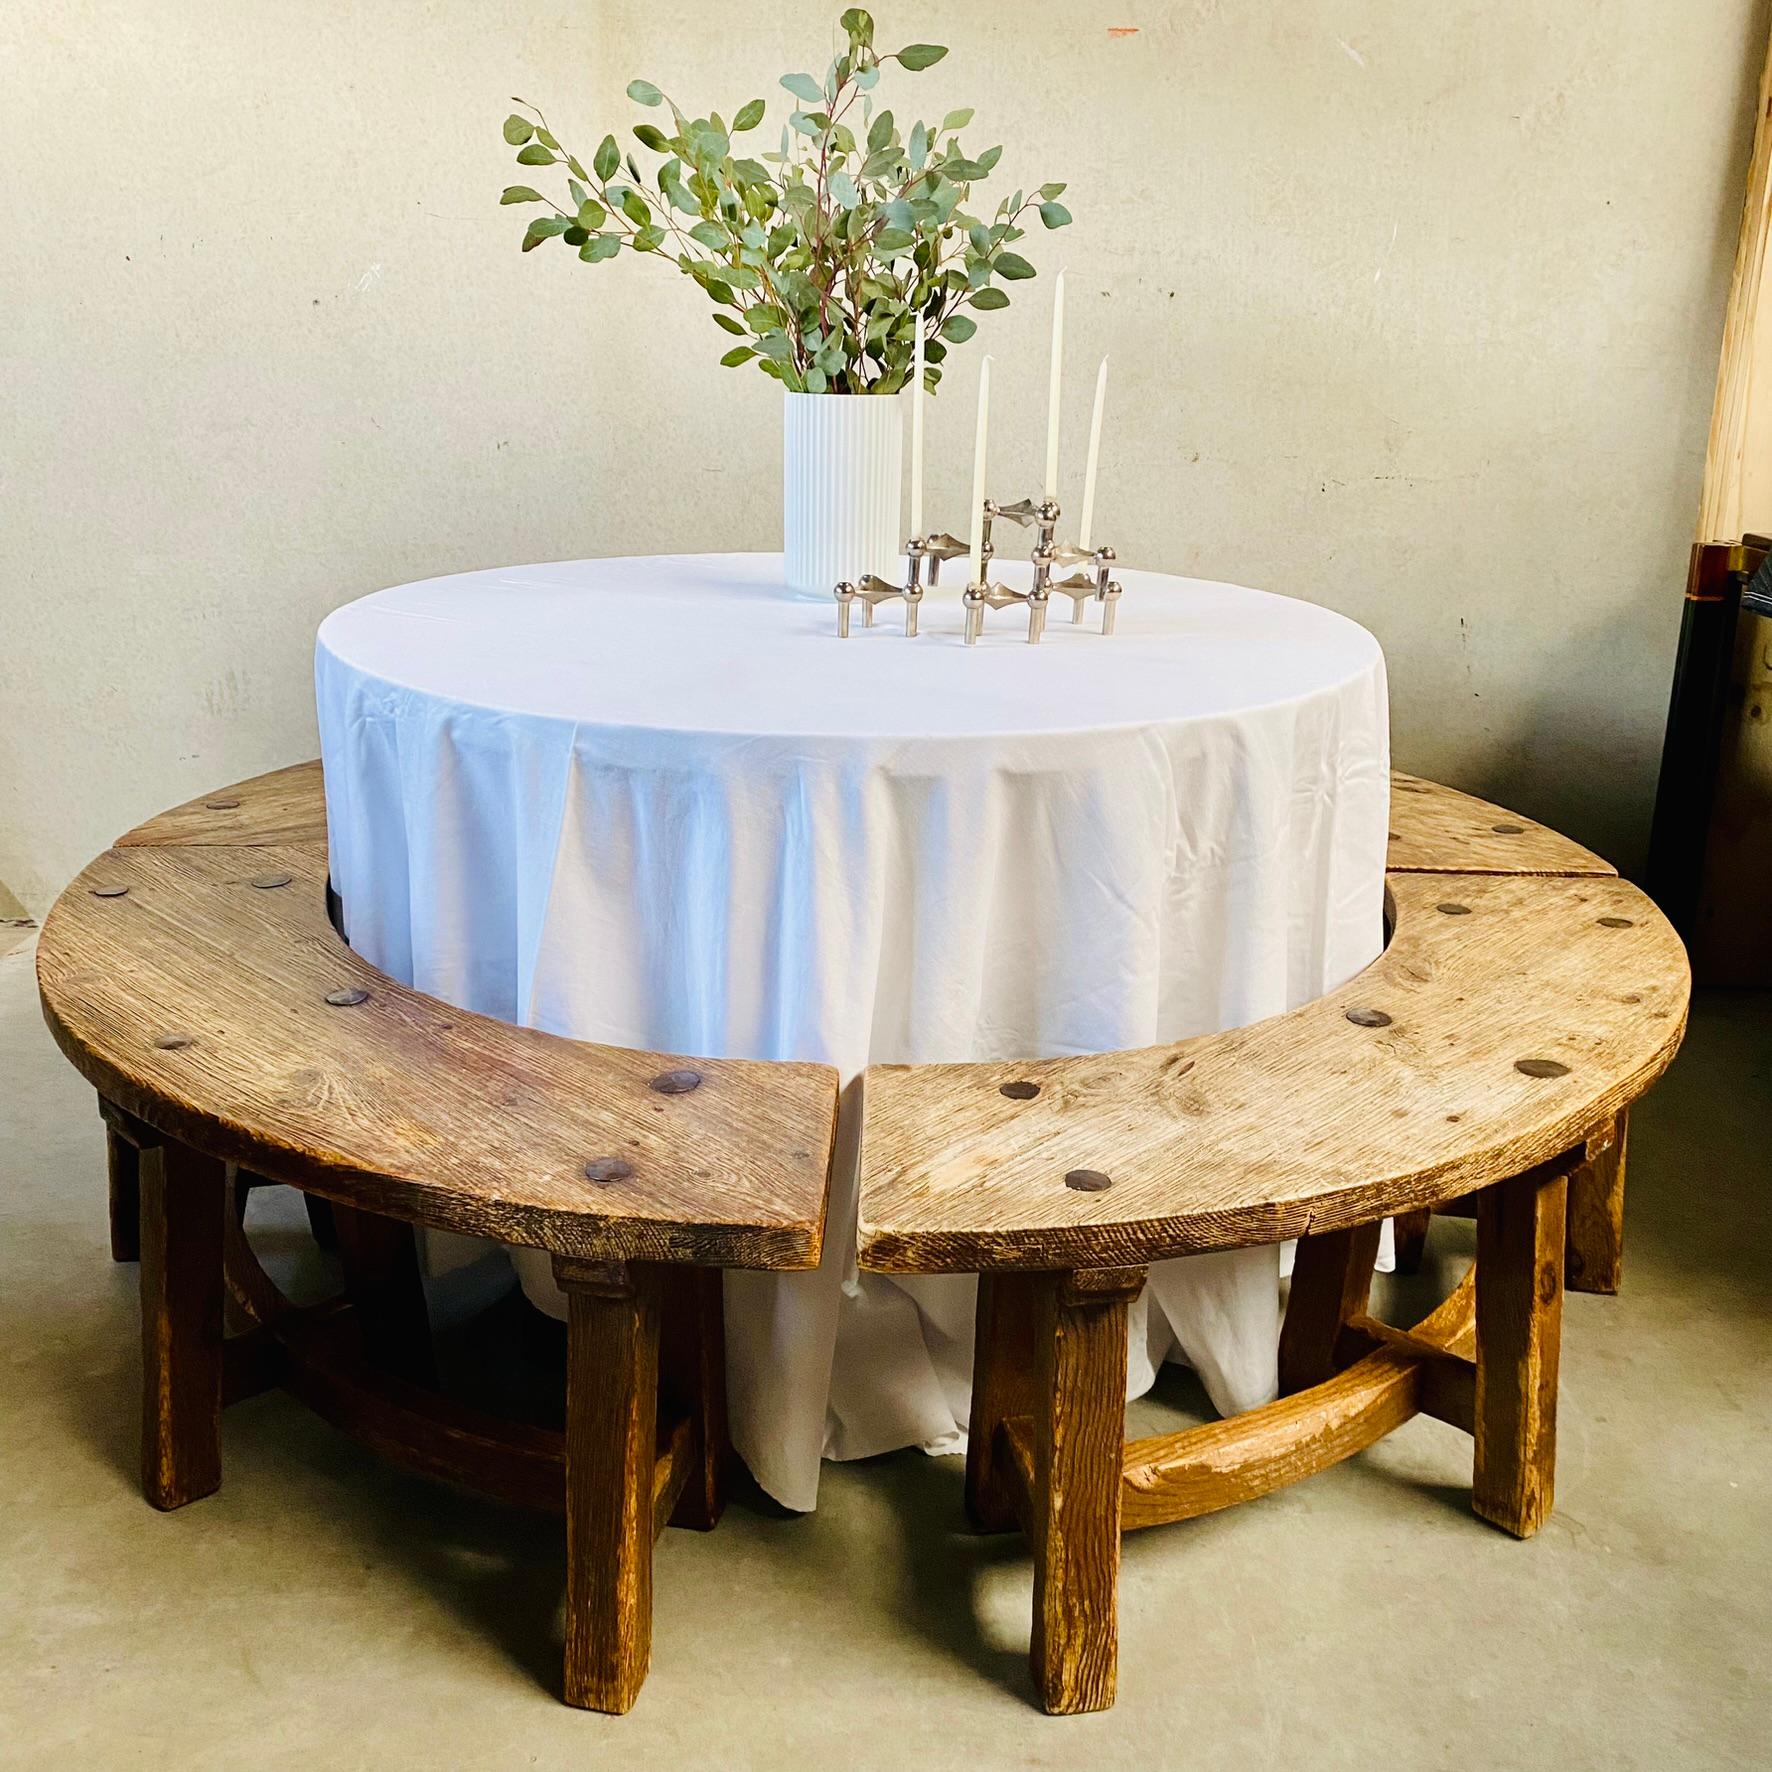 Élevez votre espace de salle à manger avec un ensemble de table de salle à manger en chêne massif rond, rustique et brutaliste Wabi Sabi des années 1950 en France.

Introduisez une élégance intemporelle et un charme rustique dans votre salle à